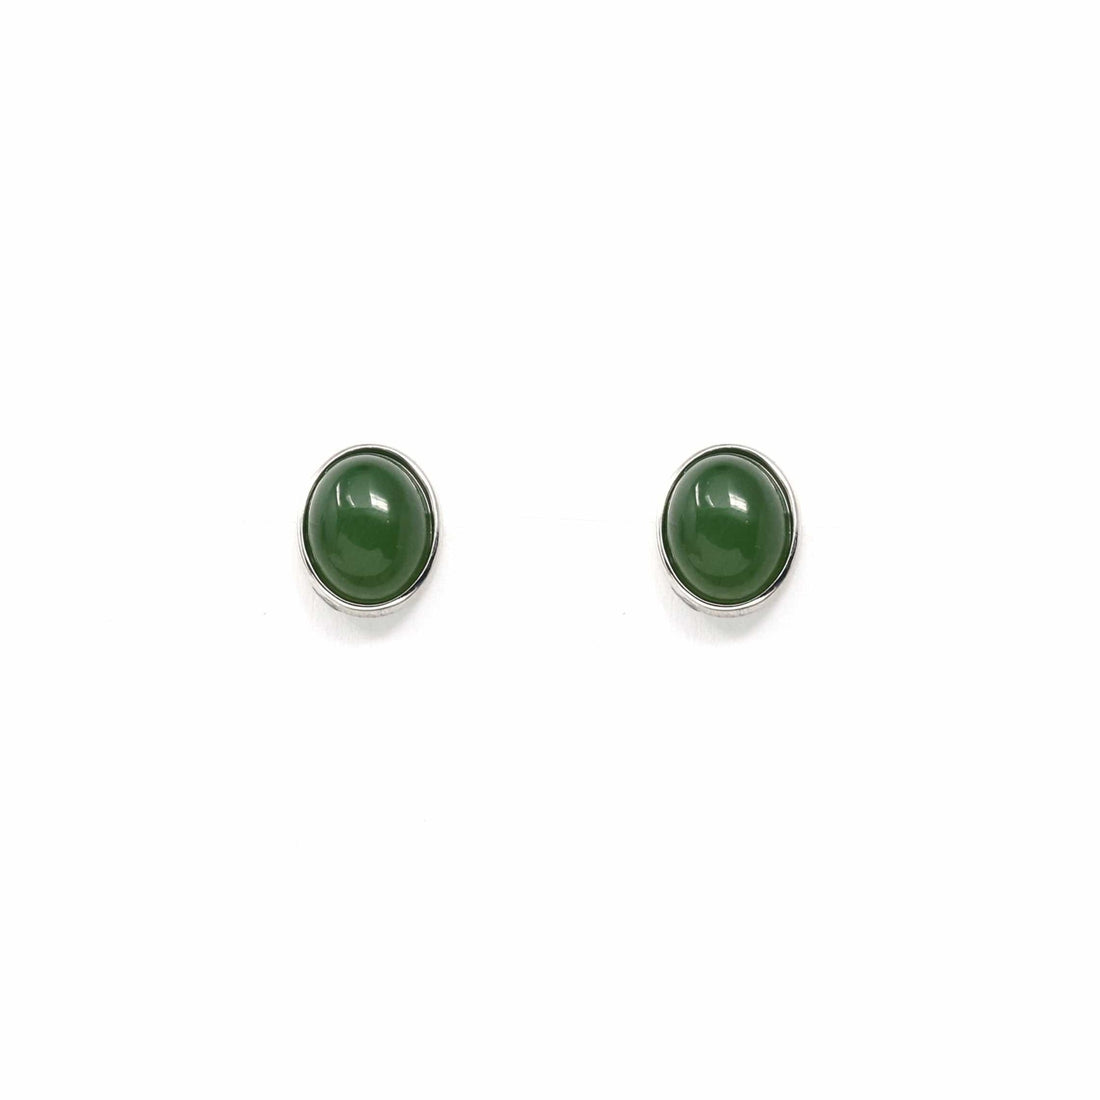 Baikalla Jewelry Silver Gemstone Earrings Sterling Silver Genuine Nephrite Green Jade Oval Stud Earrings